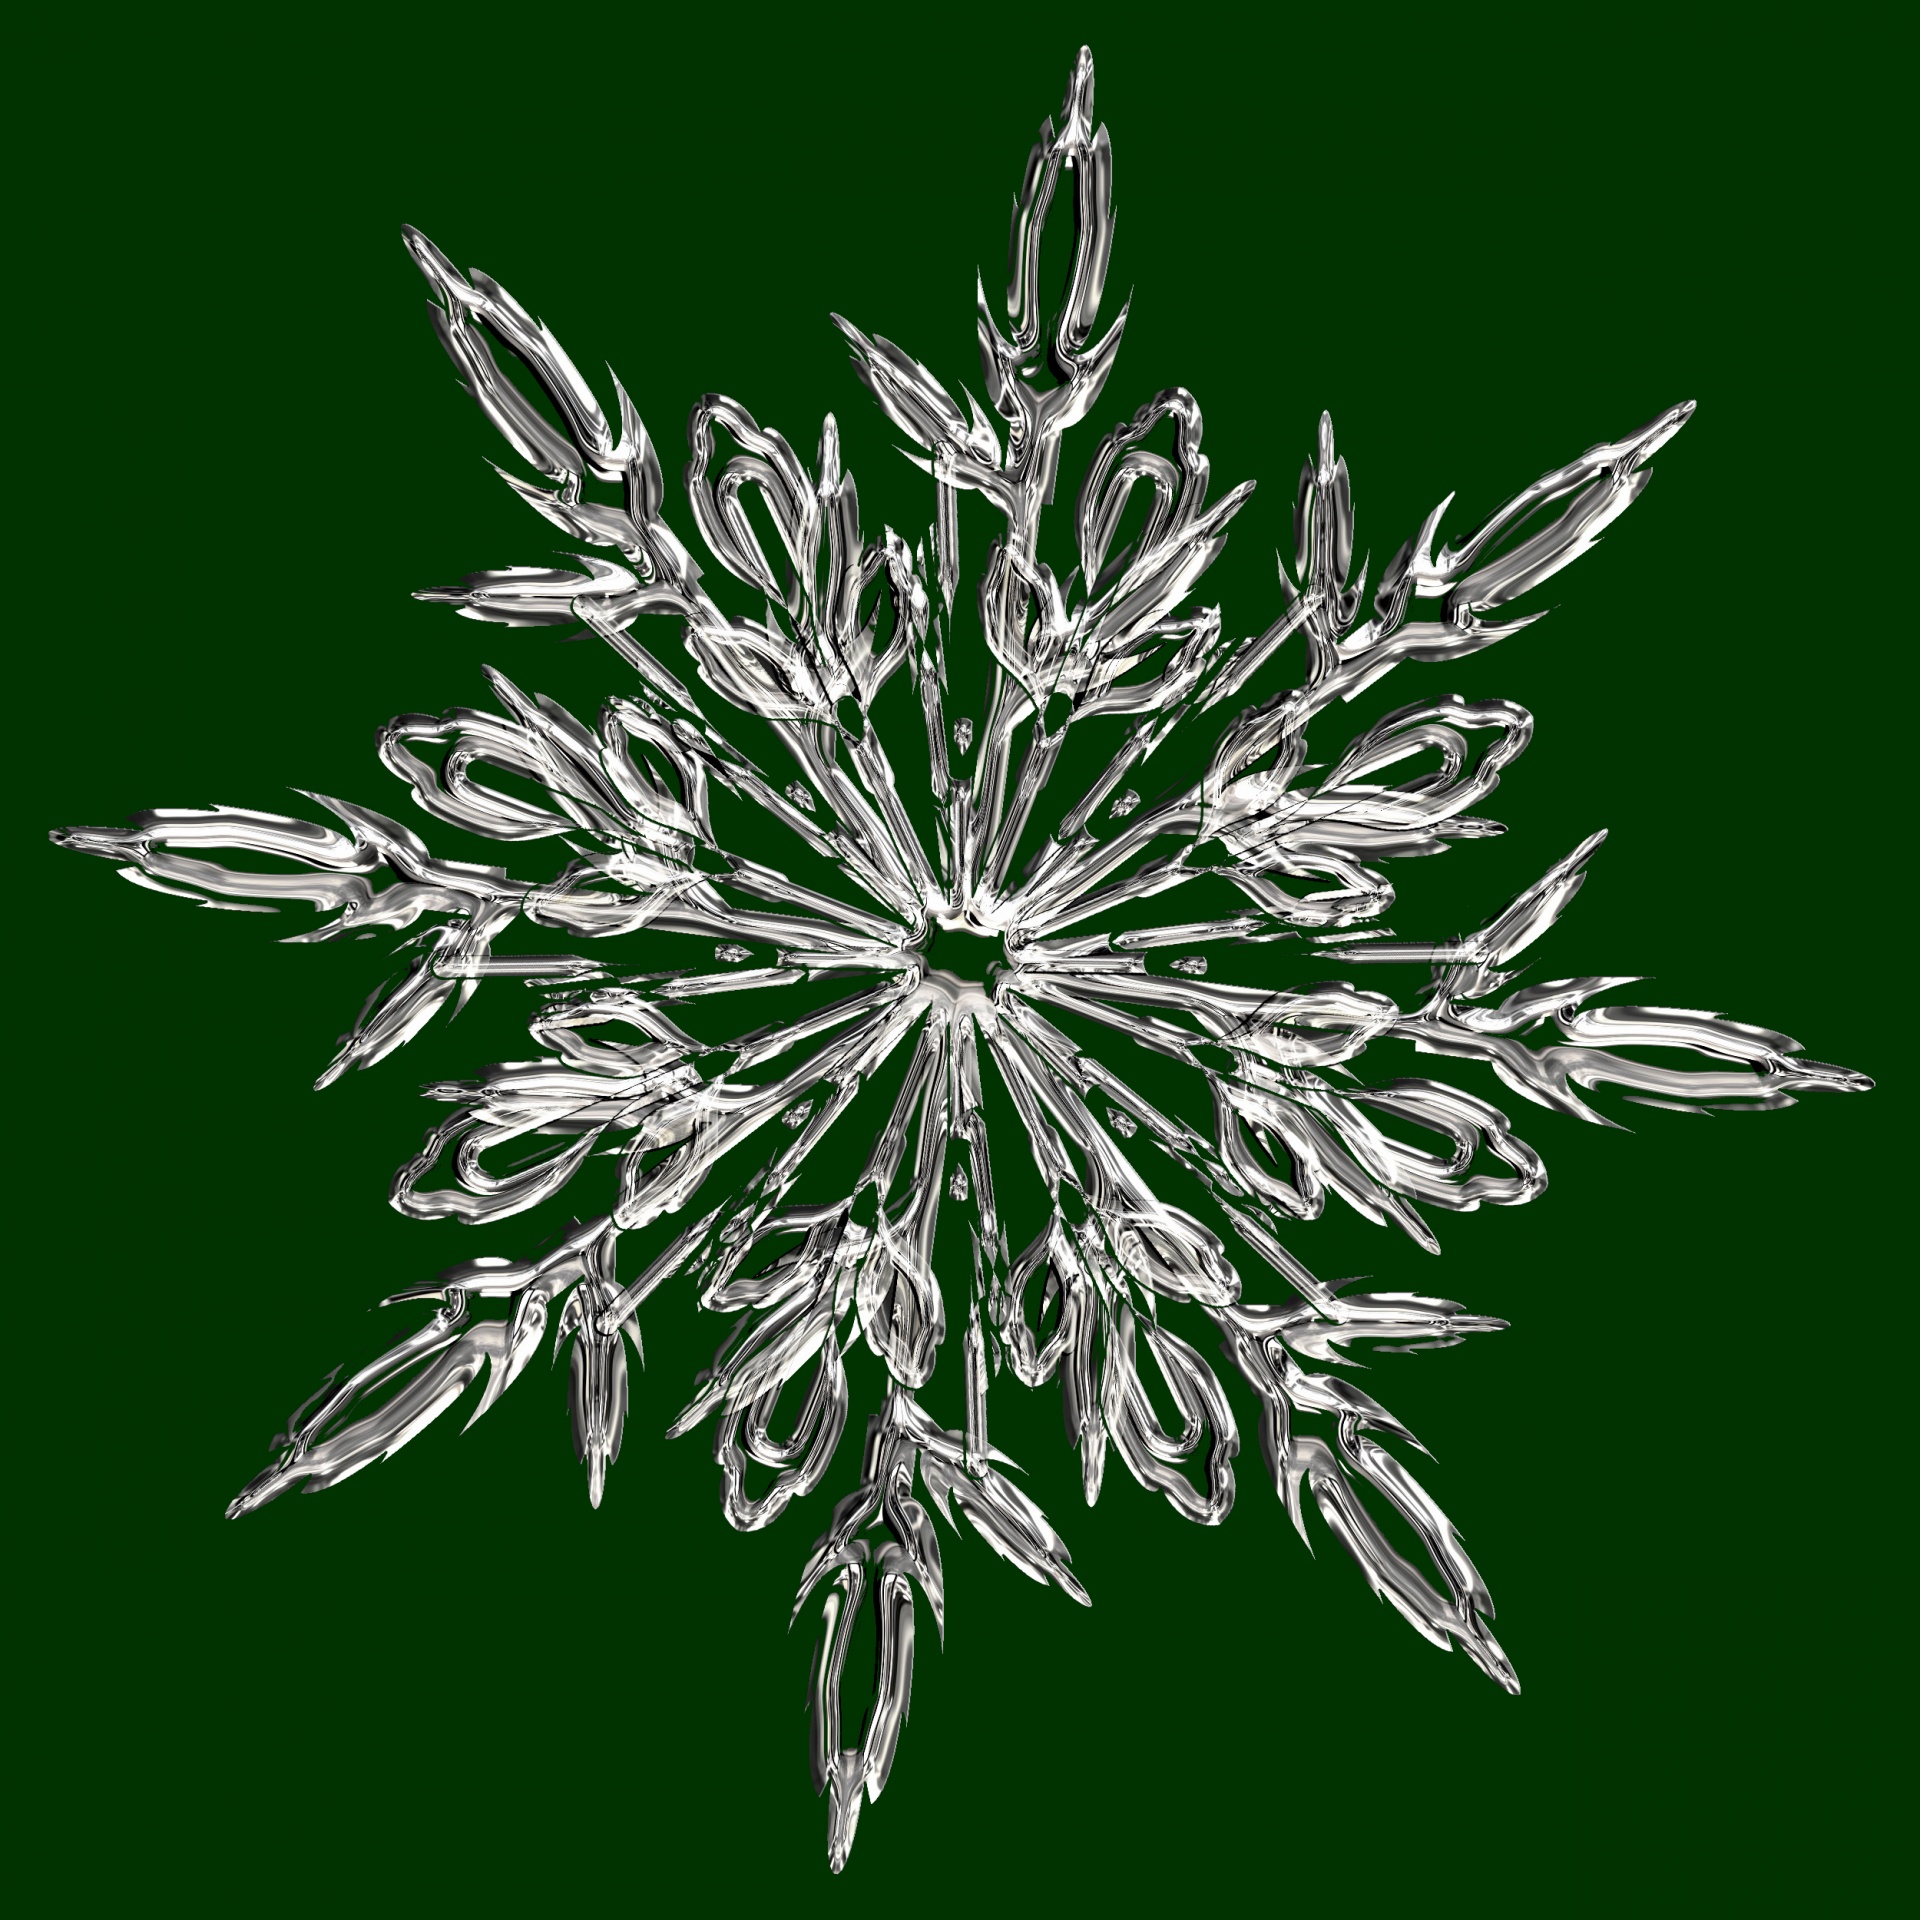 Floco de neve de cristal verde